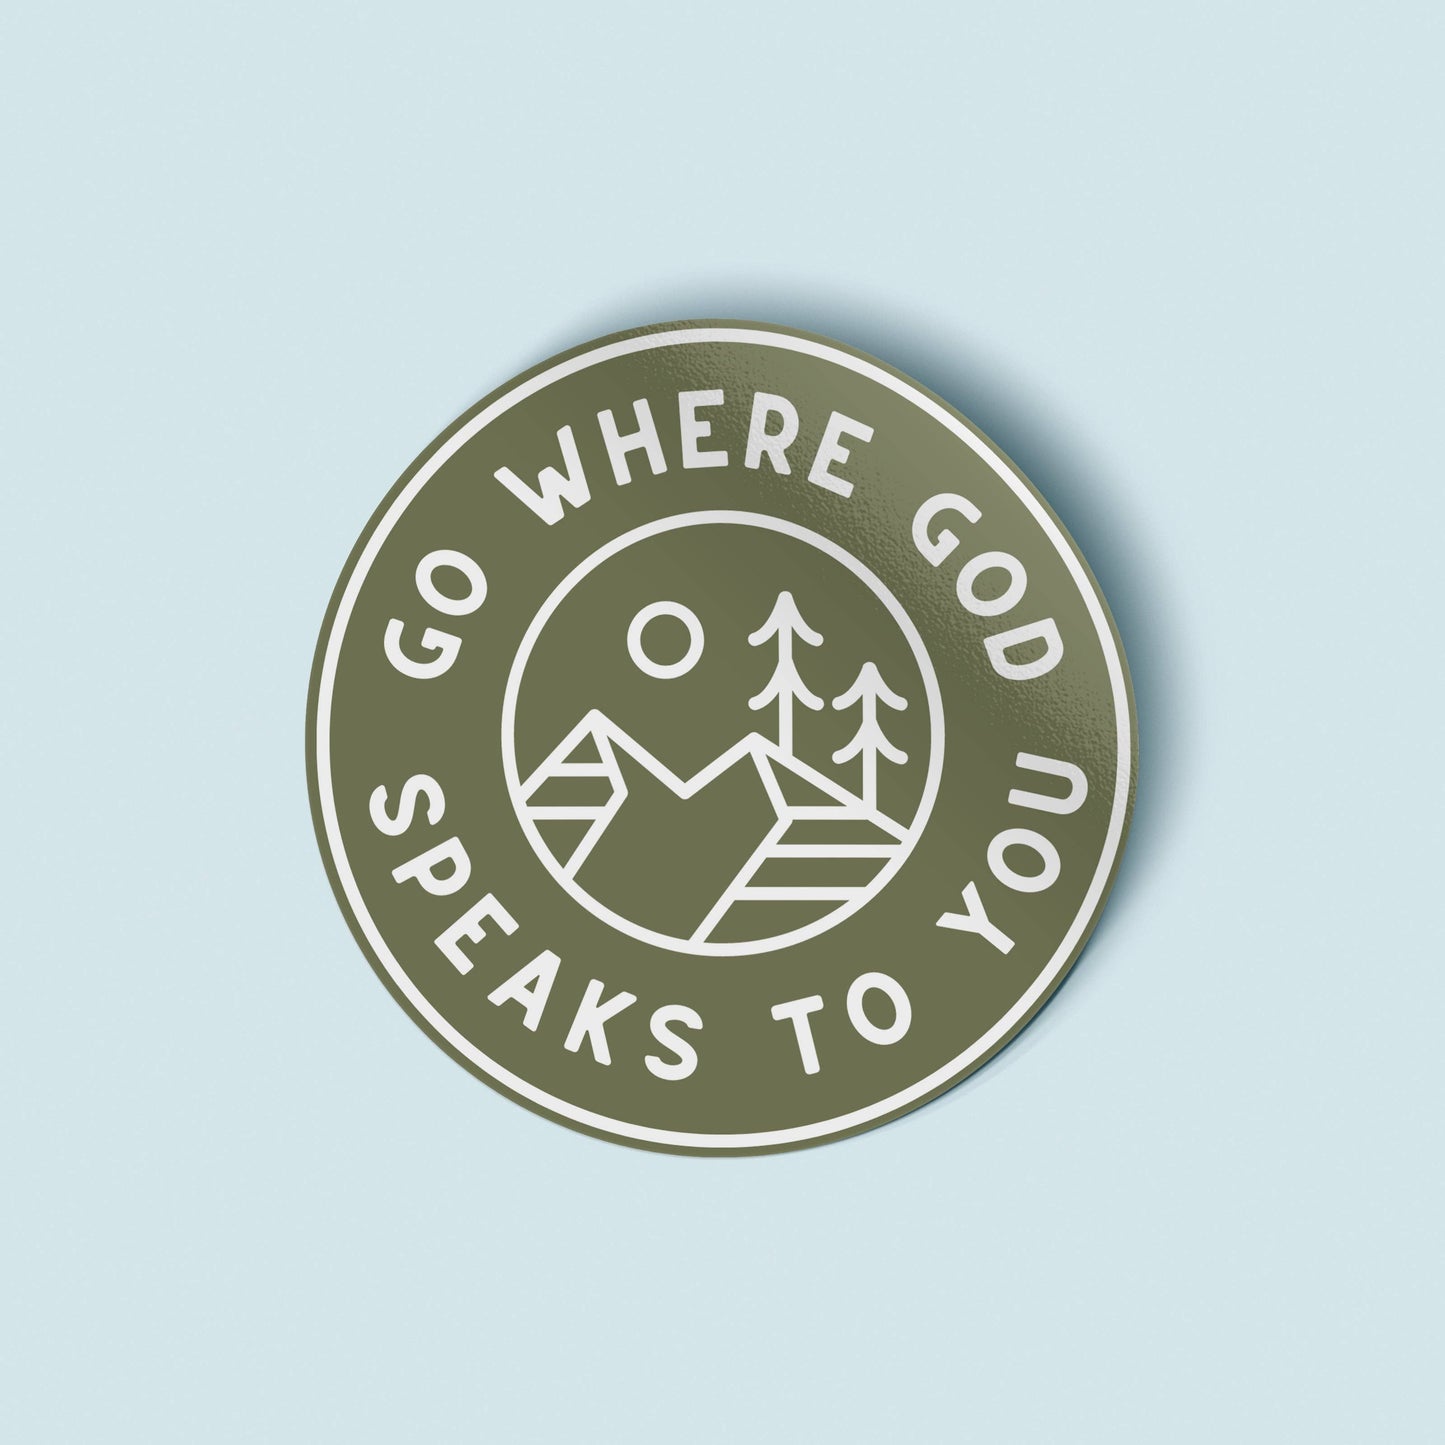 Go Where God Speaks Vinyl Sticker